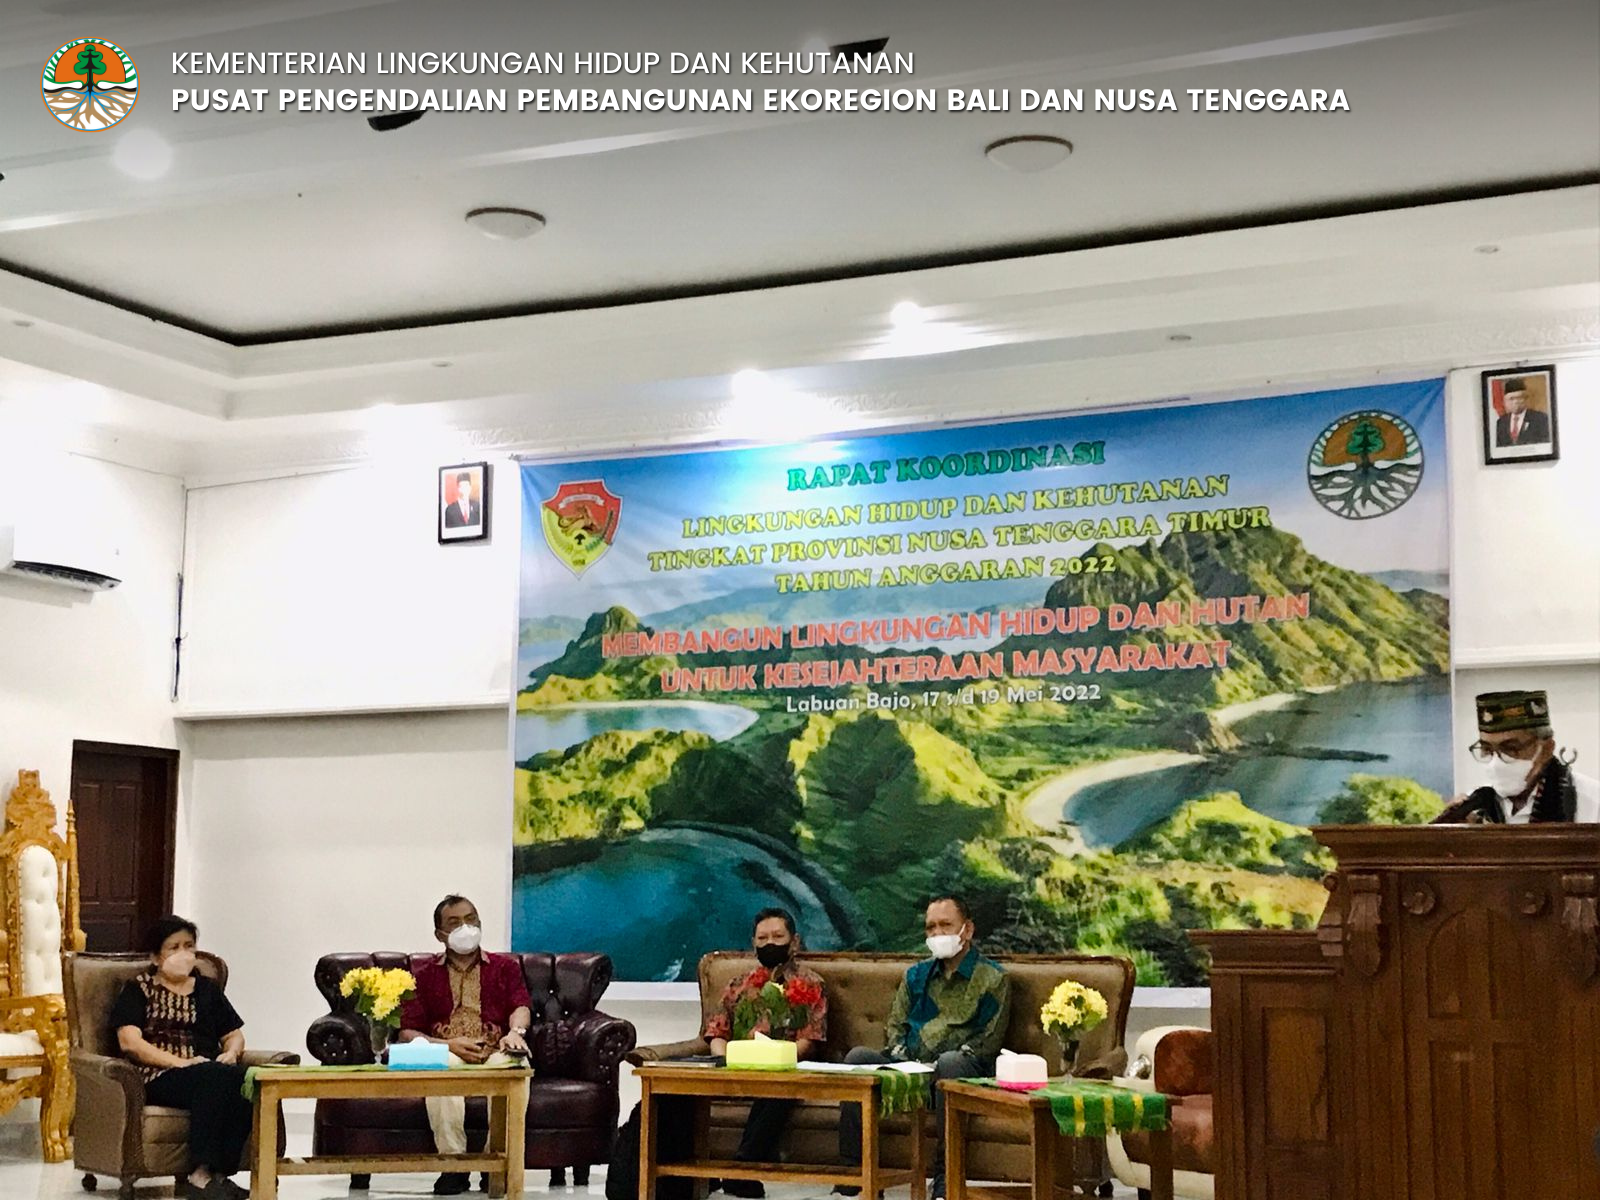 Rapat Koordinasi dan Sinkronisasi Program Kegiatan UPTD Dalam Pengelolaan Lingkungan Hidup dan Kehutanan di Tingkat Provinsi NTT